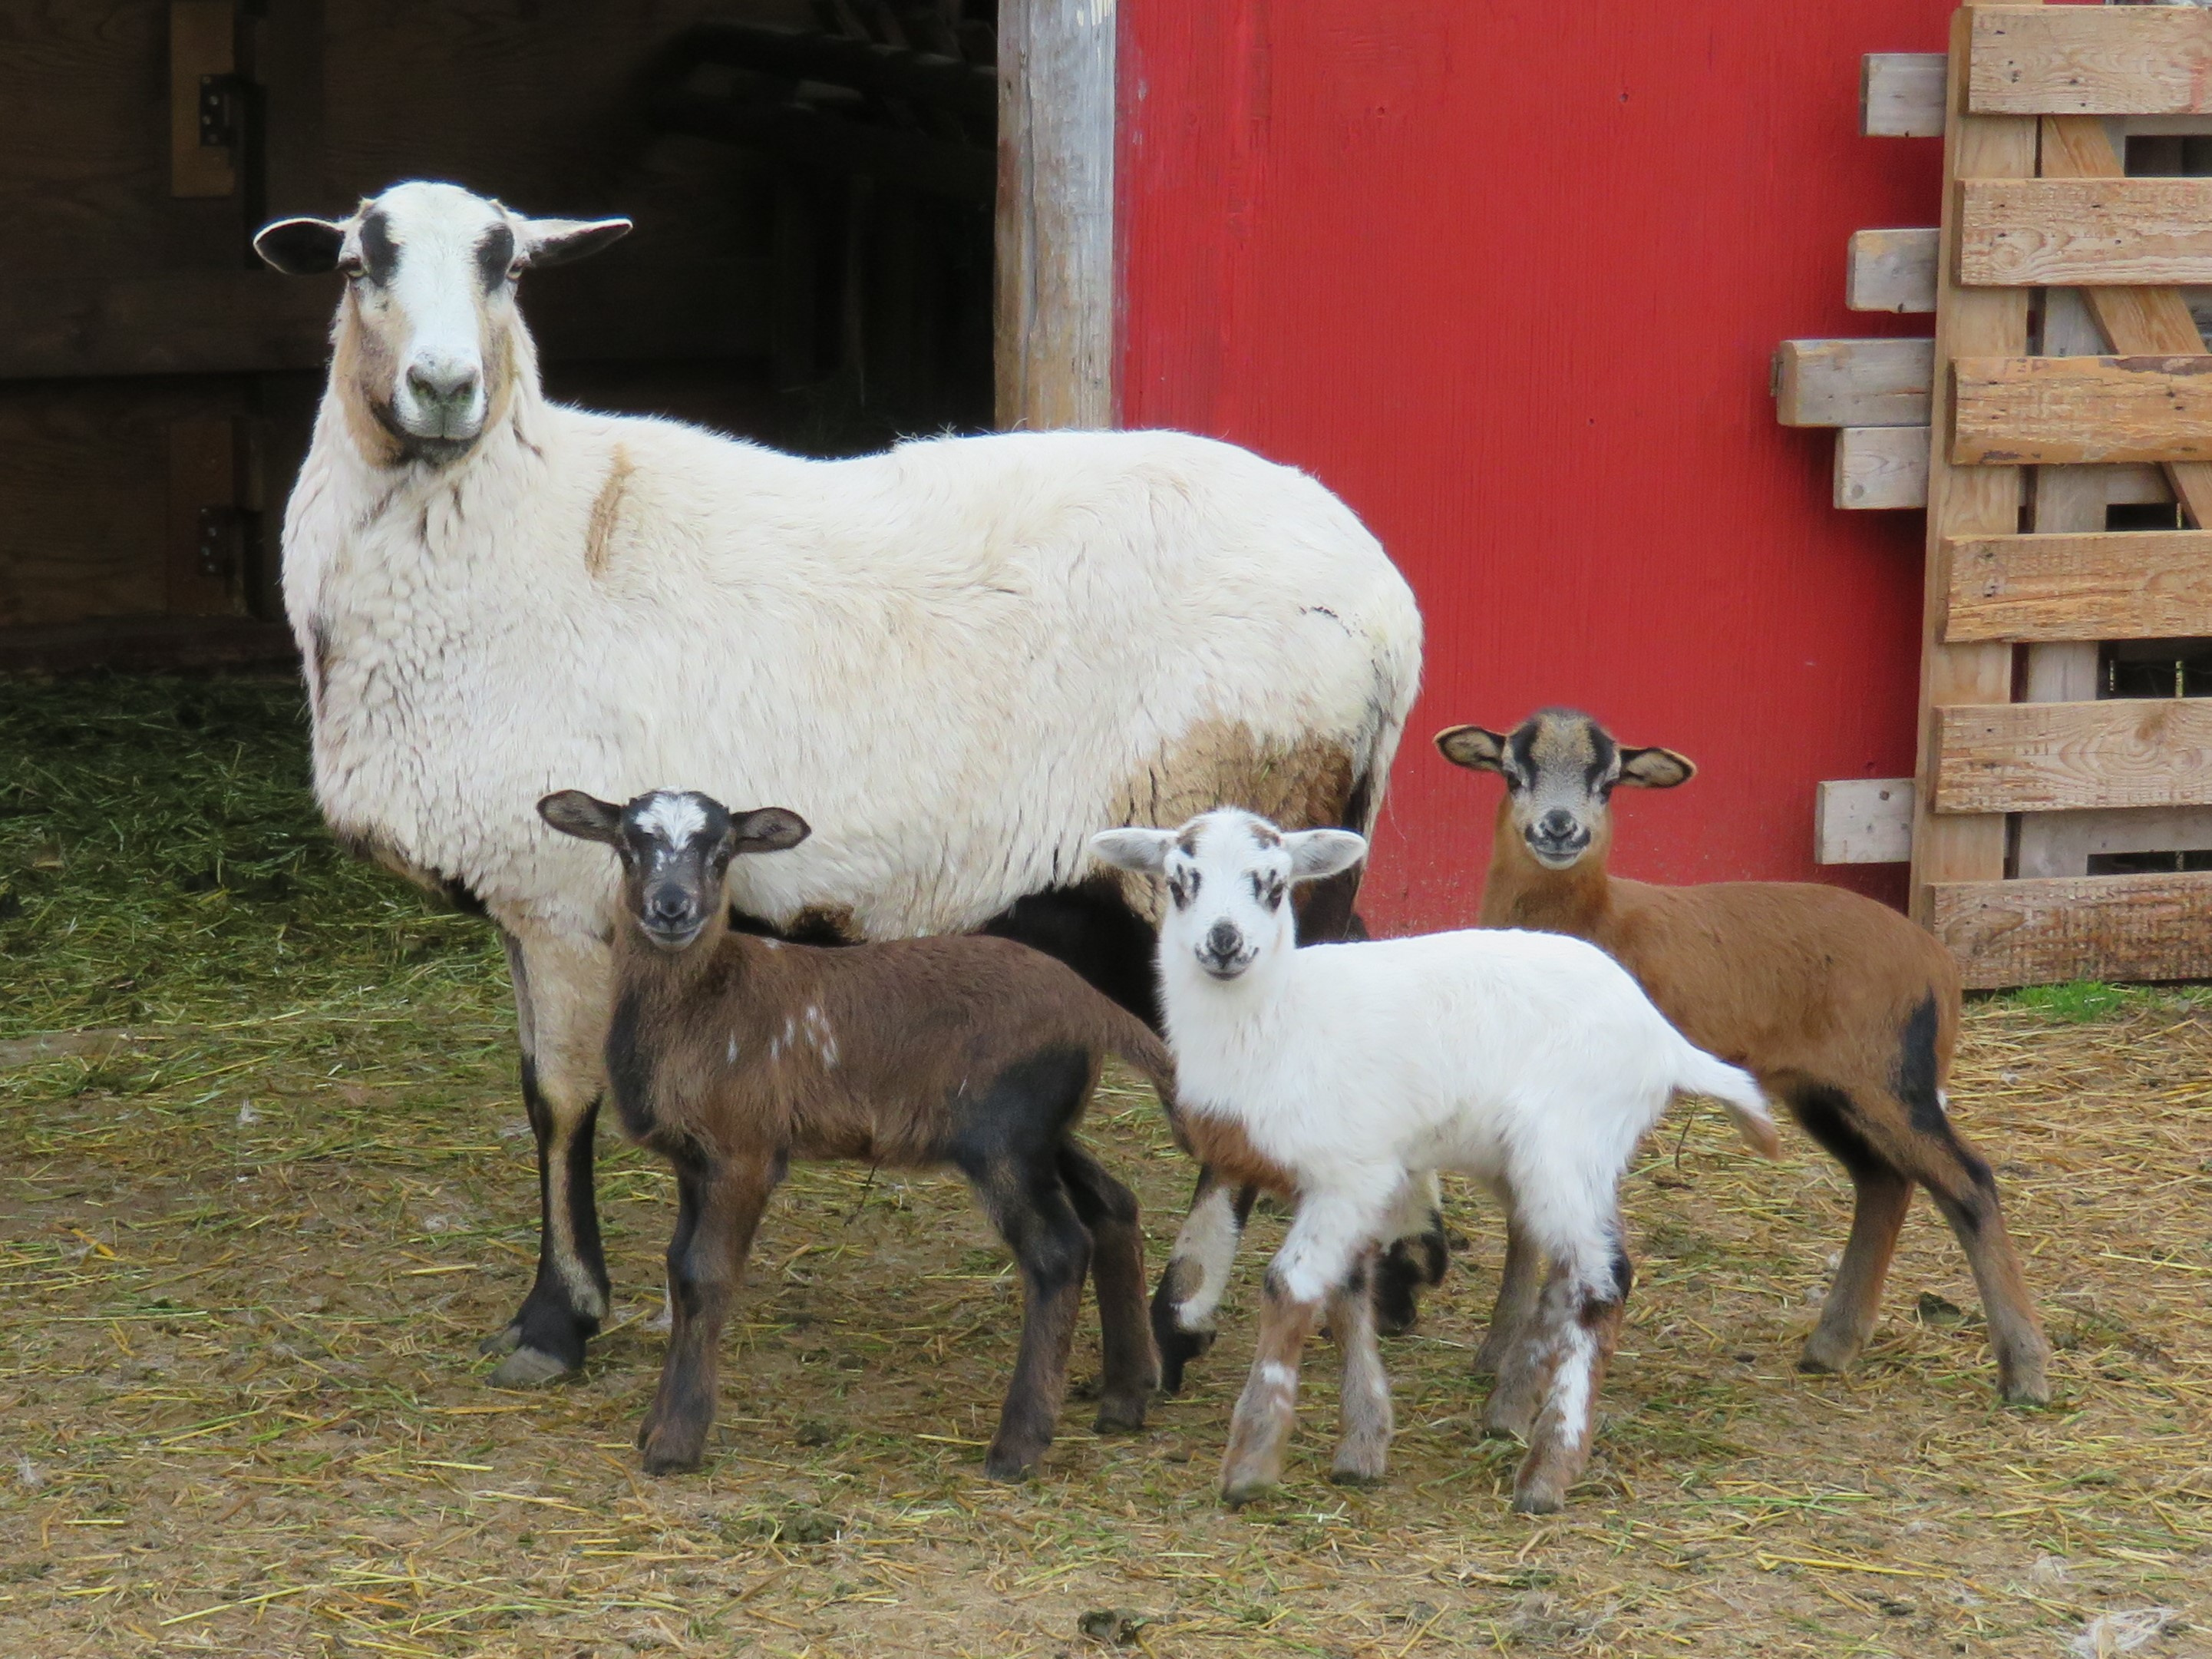 Big Rock Beauty
ram, ewe & ewe lambs 